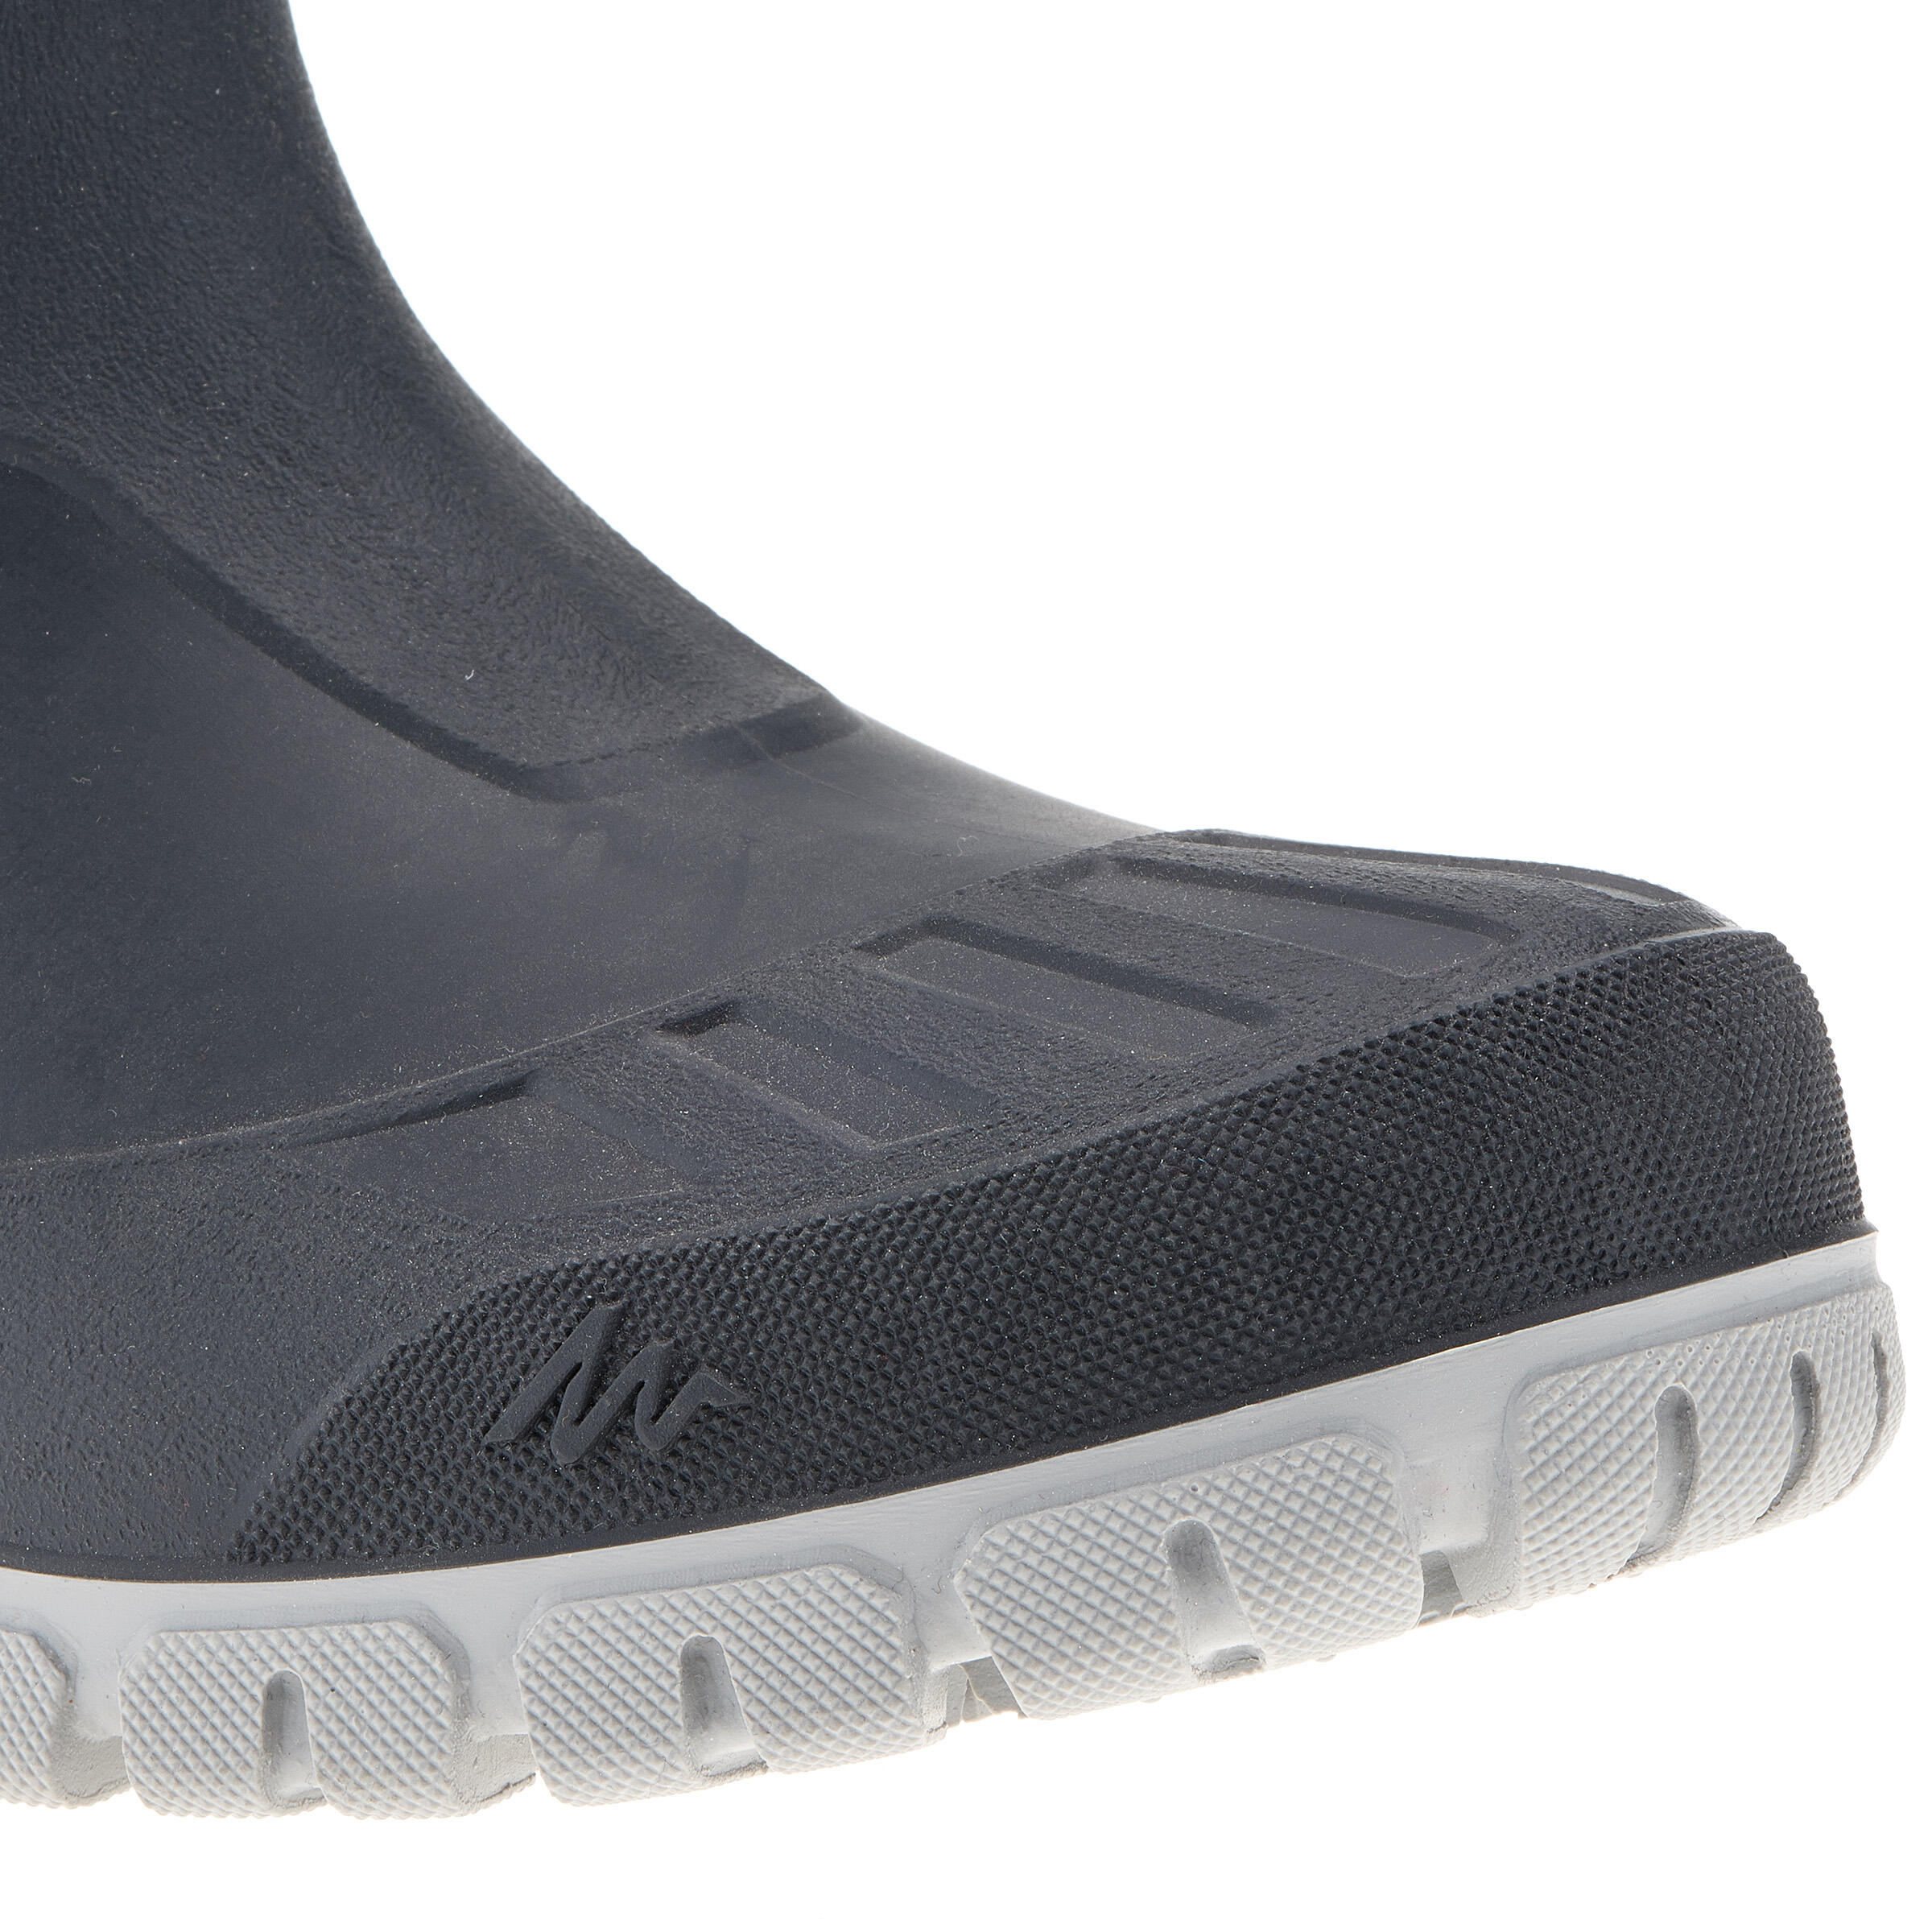 Arpenaz 50 Warm waterproof men's hiking boots - Grey 8/14